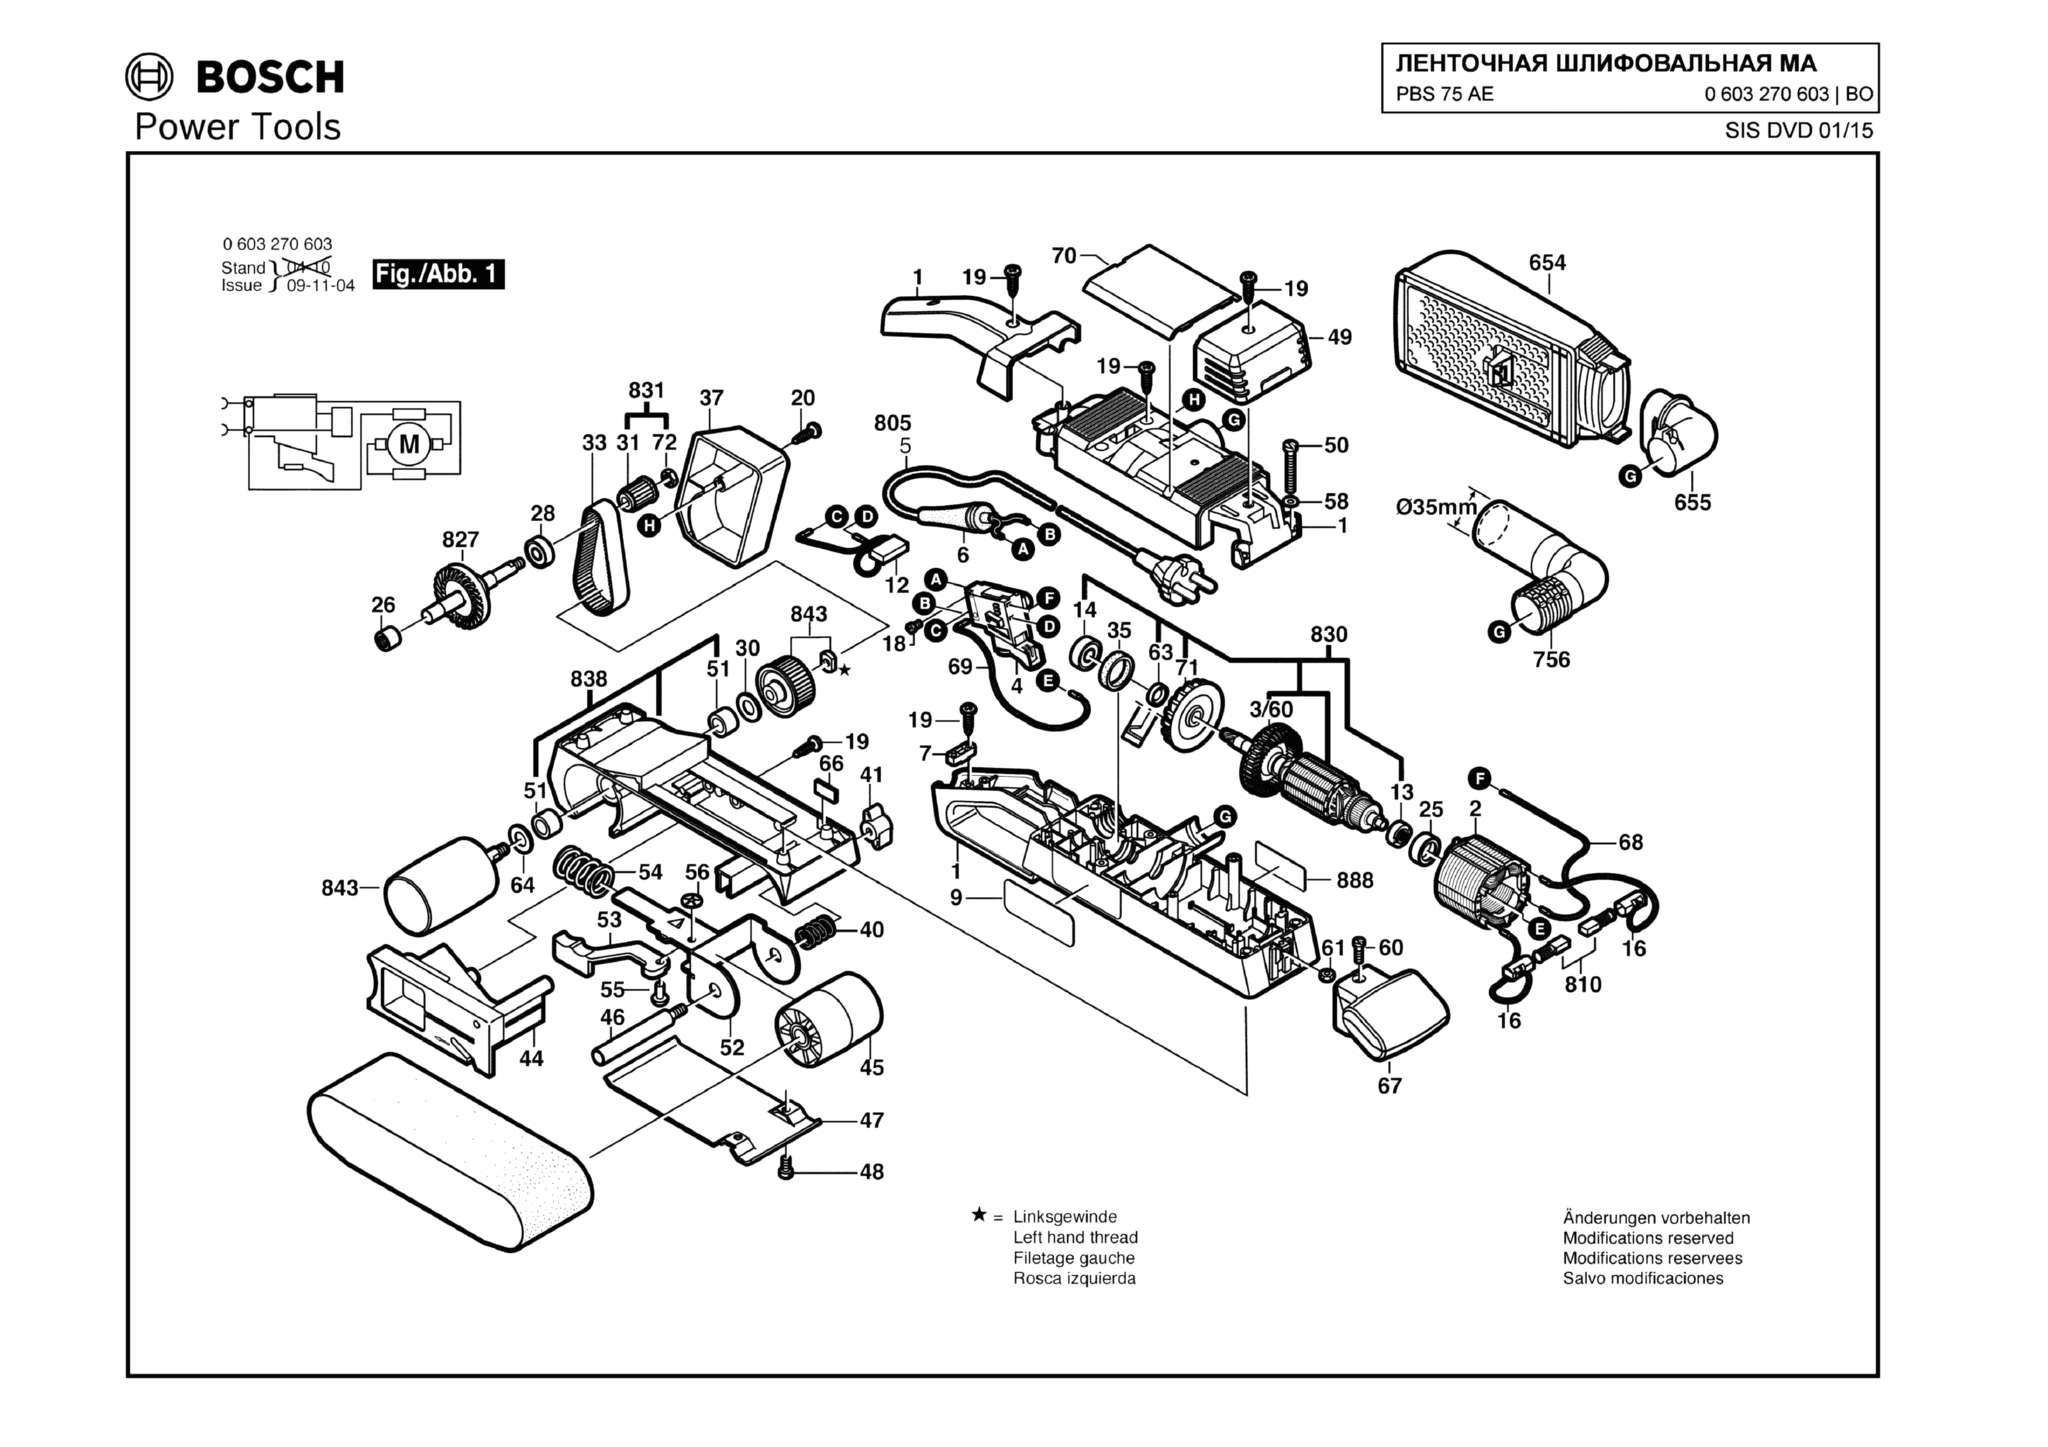 Запчасти, схема и деталировка Bosch PBS 75 AE (ТИП 0603270603)